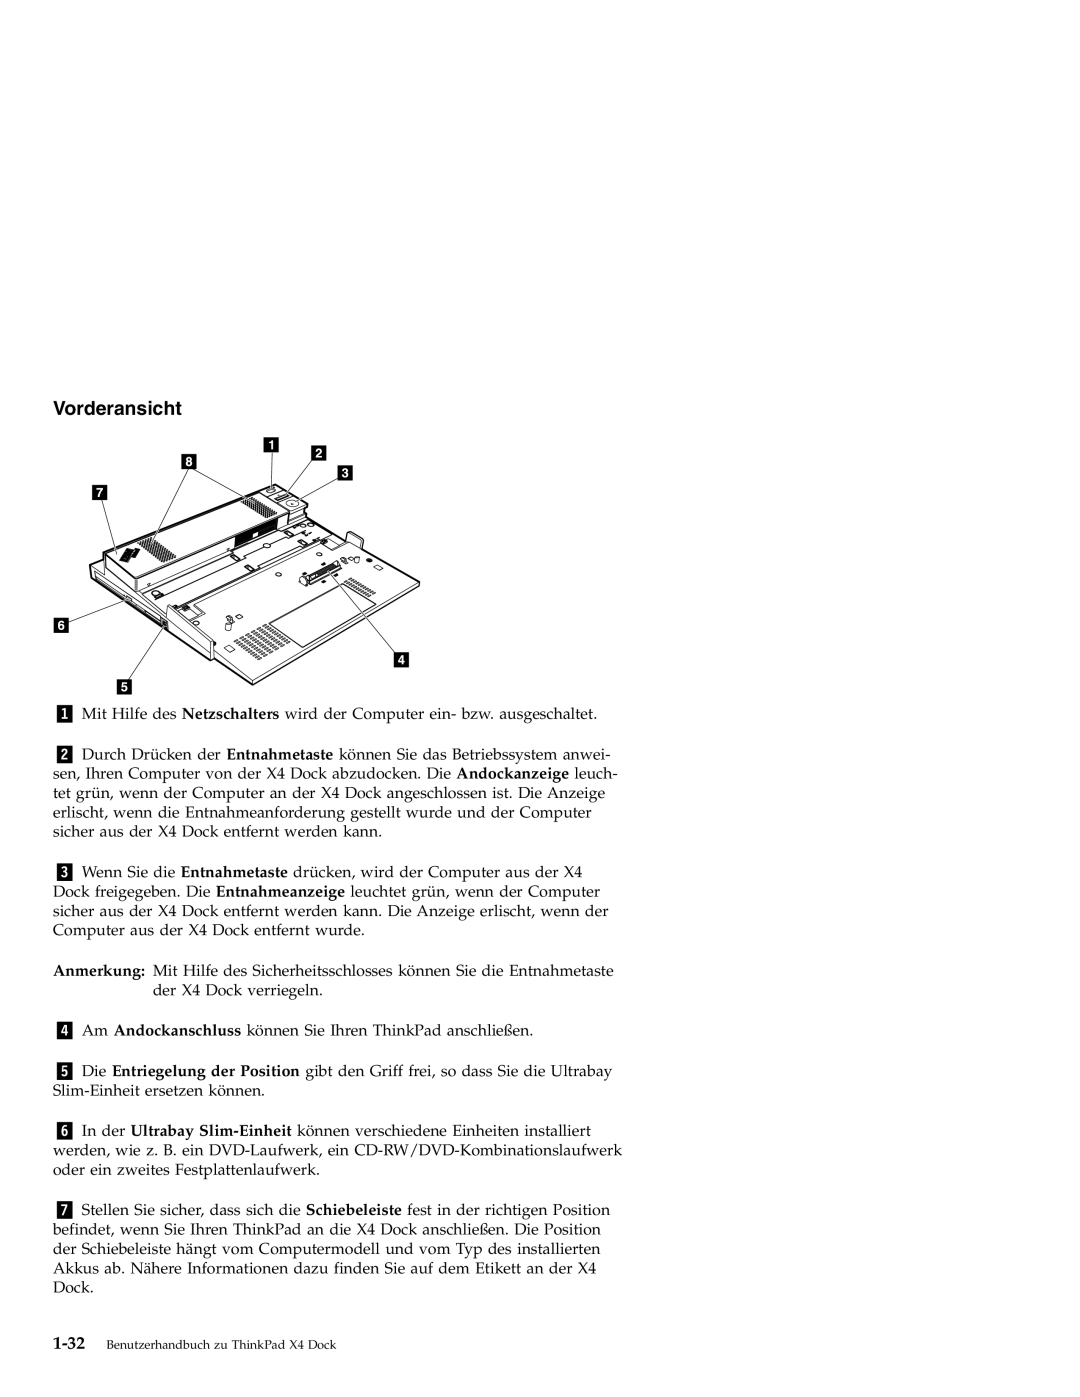 IBM X4 manual Vorderansicht 